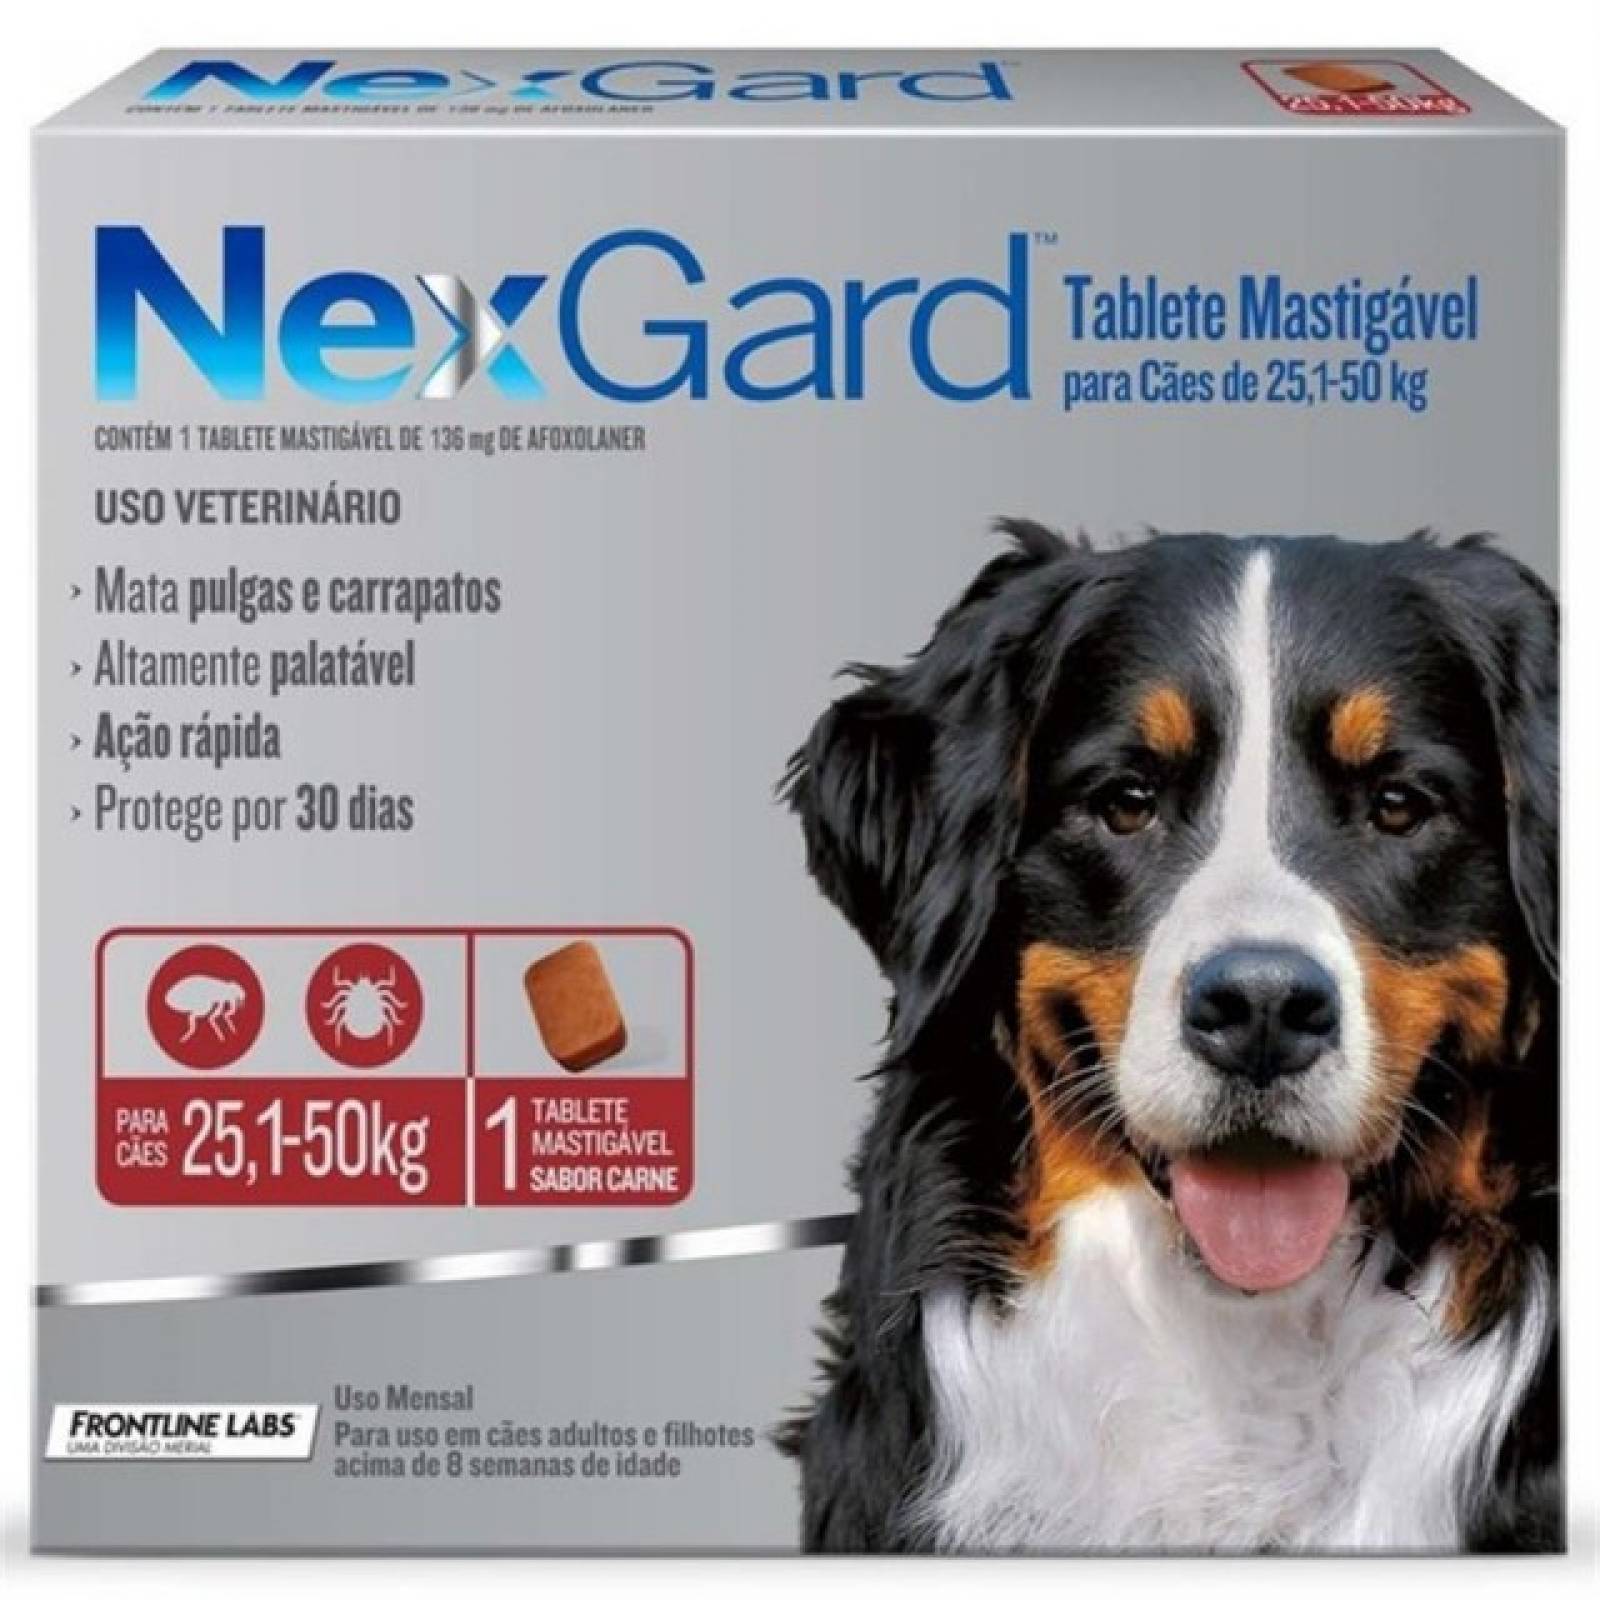 NexGard XL Ectoparasiticida Perro xgde 25-50 kg 1 tab. masticable